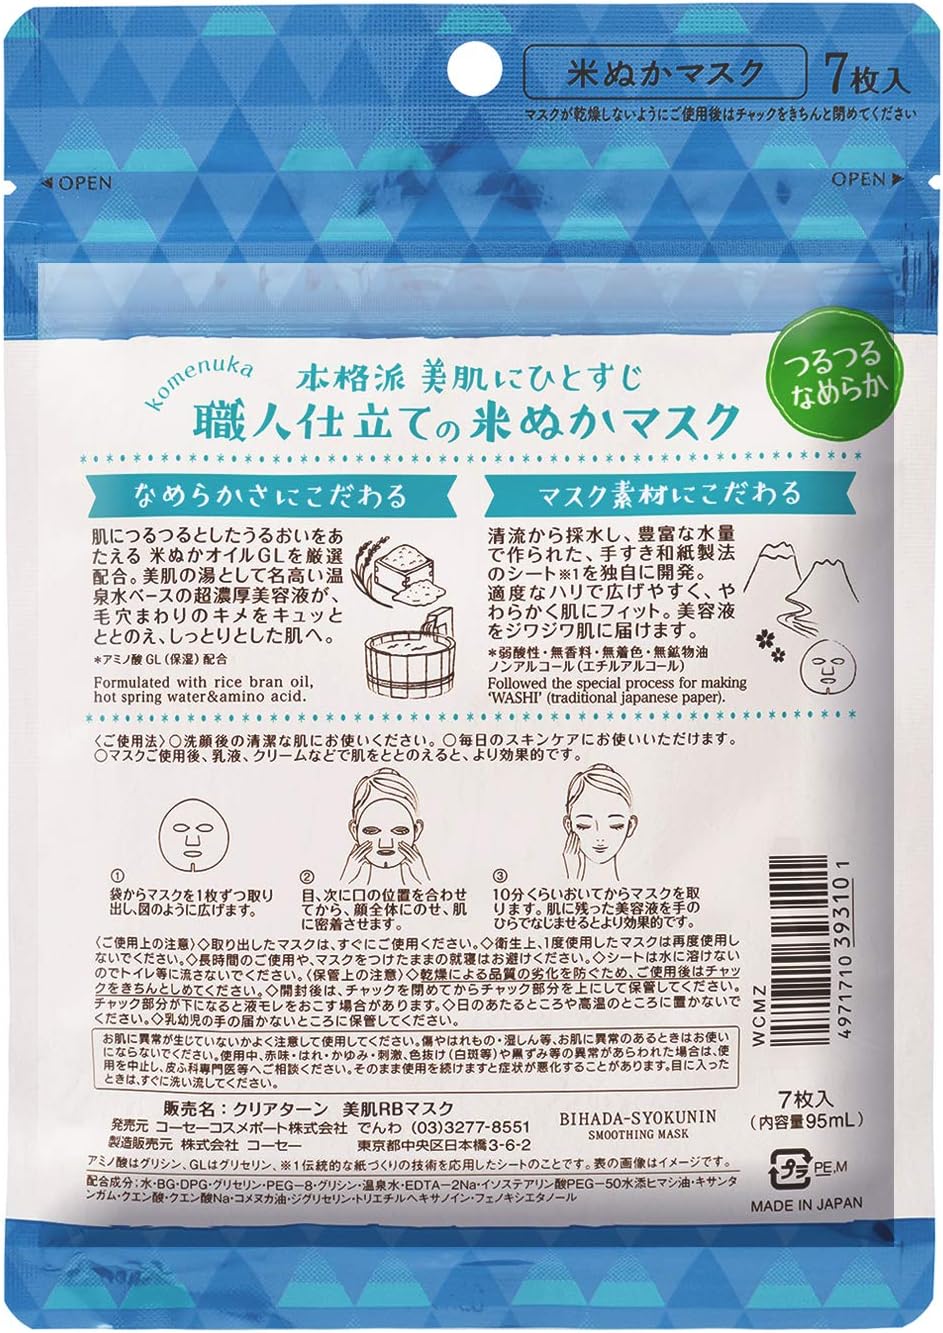 Kose Clear Turn Skin Craftsman Rice Bran Seven Masks - 7 sheets - NihonMura